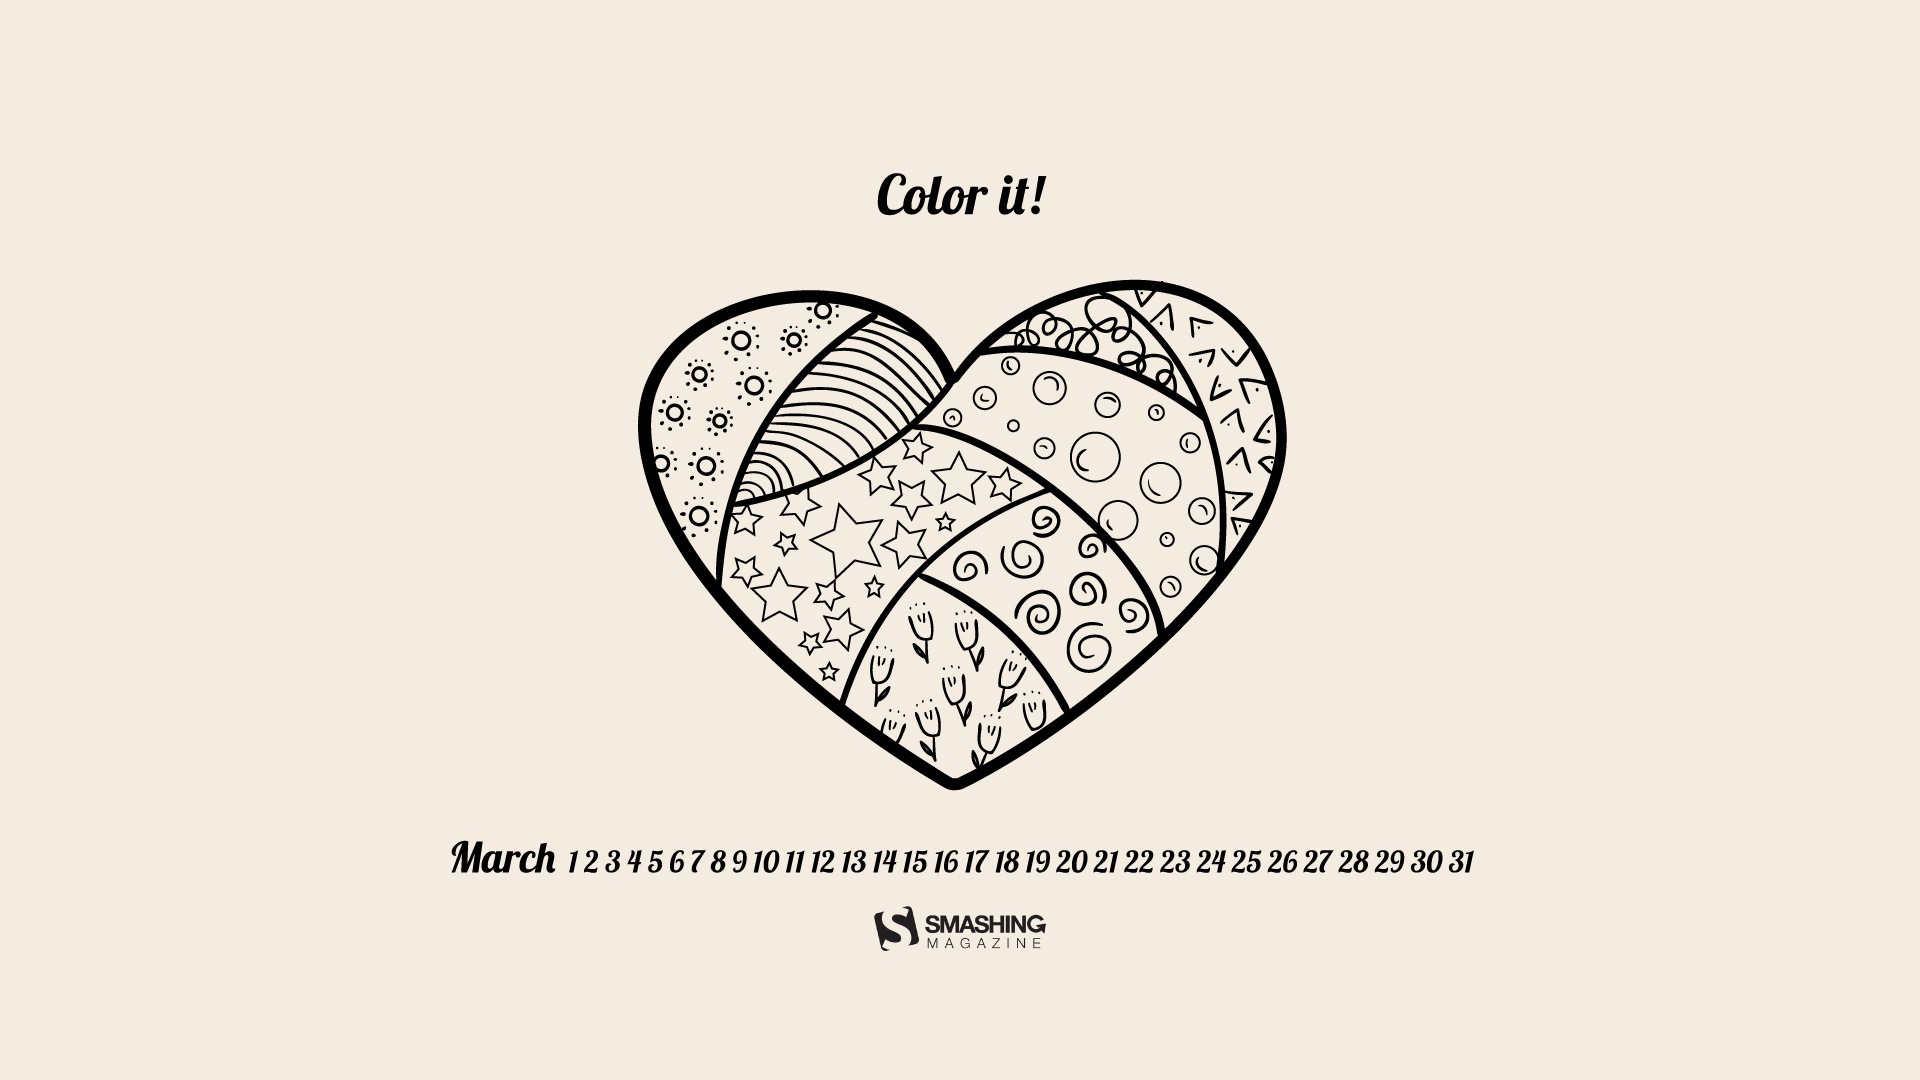 Mars 2014 calendriers fond d'écran (1) #13 - 1920x1080